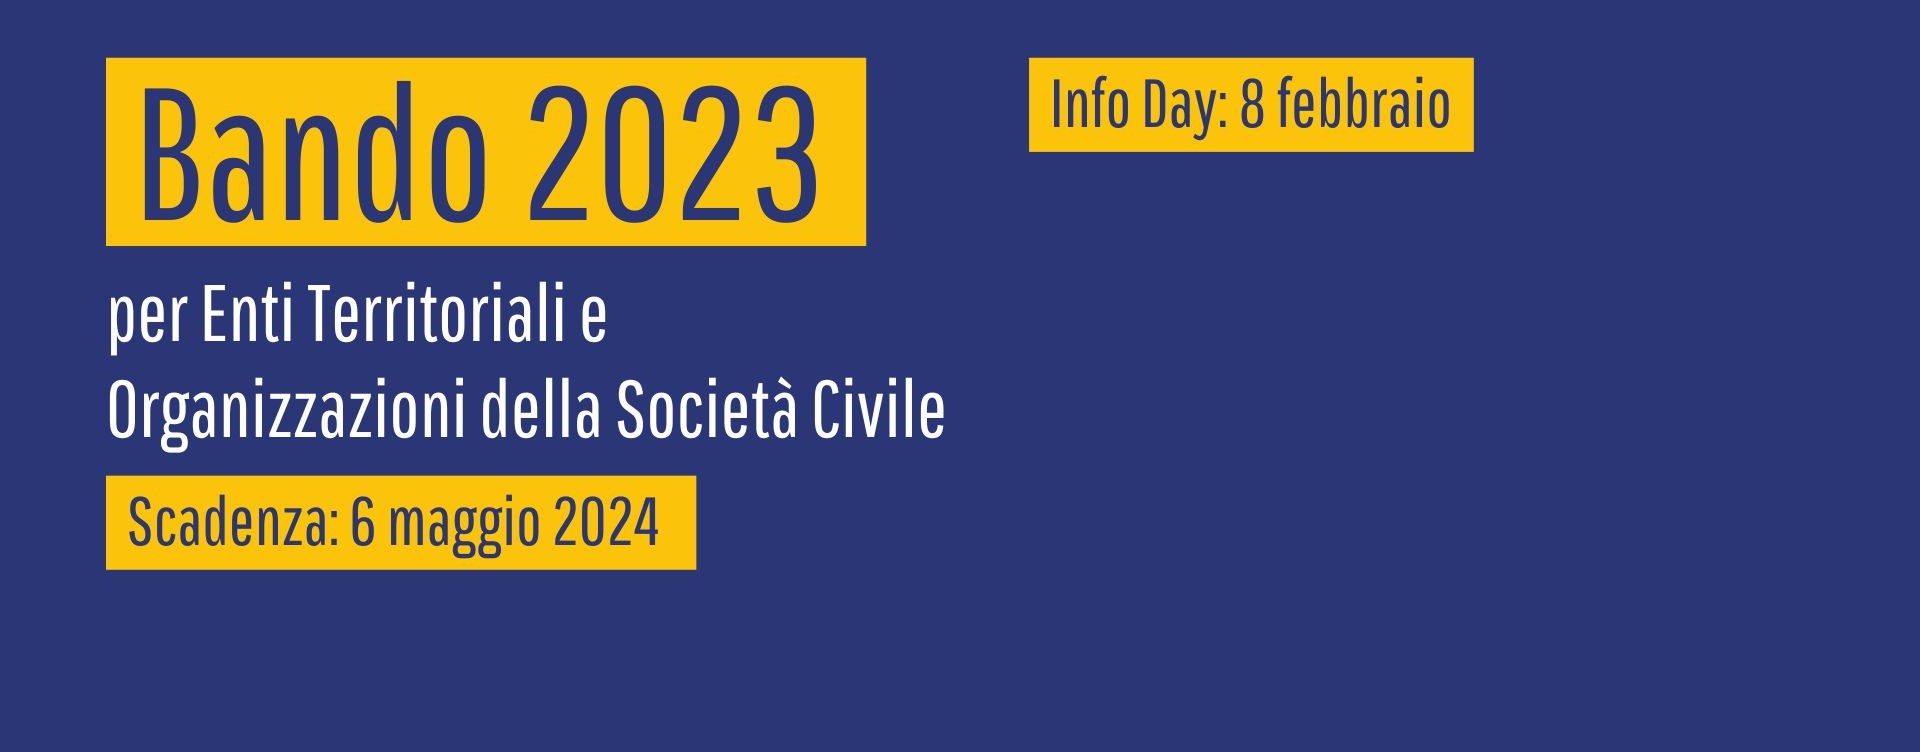 BANDO 2023: 180 milioni di dotazione e Info Day a Firenze l’8 febbraio